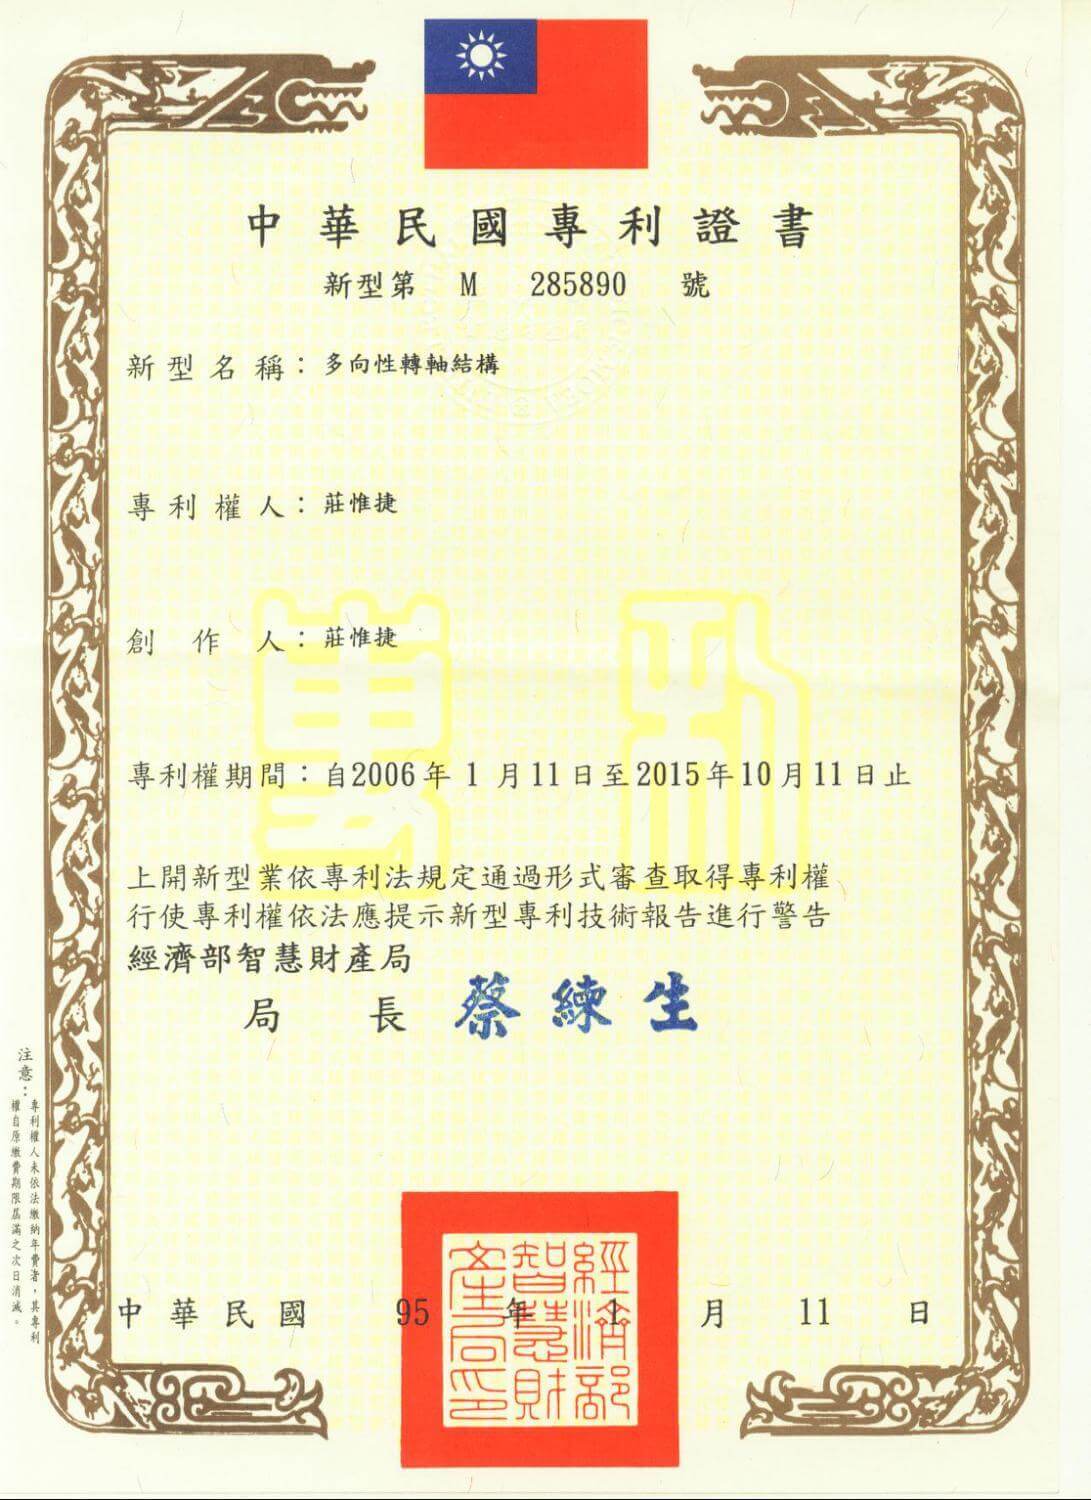 Chienfu-tec CNC patents in Taiwan-4